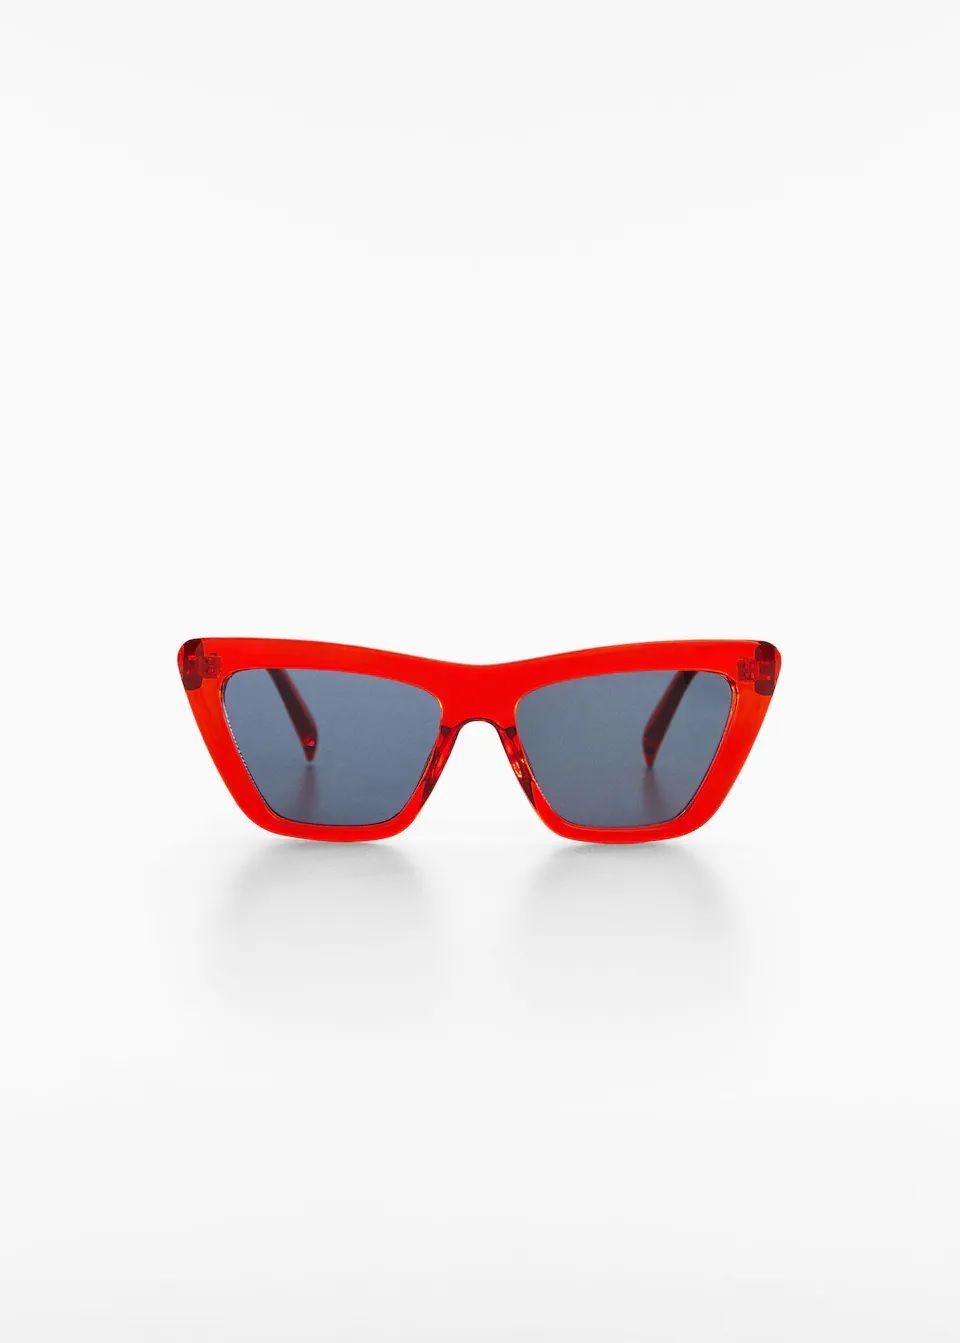 Las gafas de sol que más favorecen este verano son estas